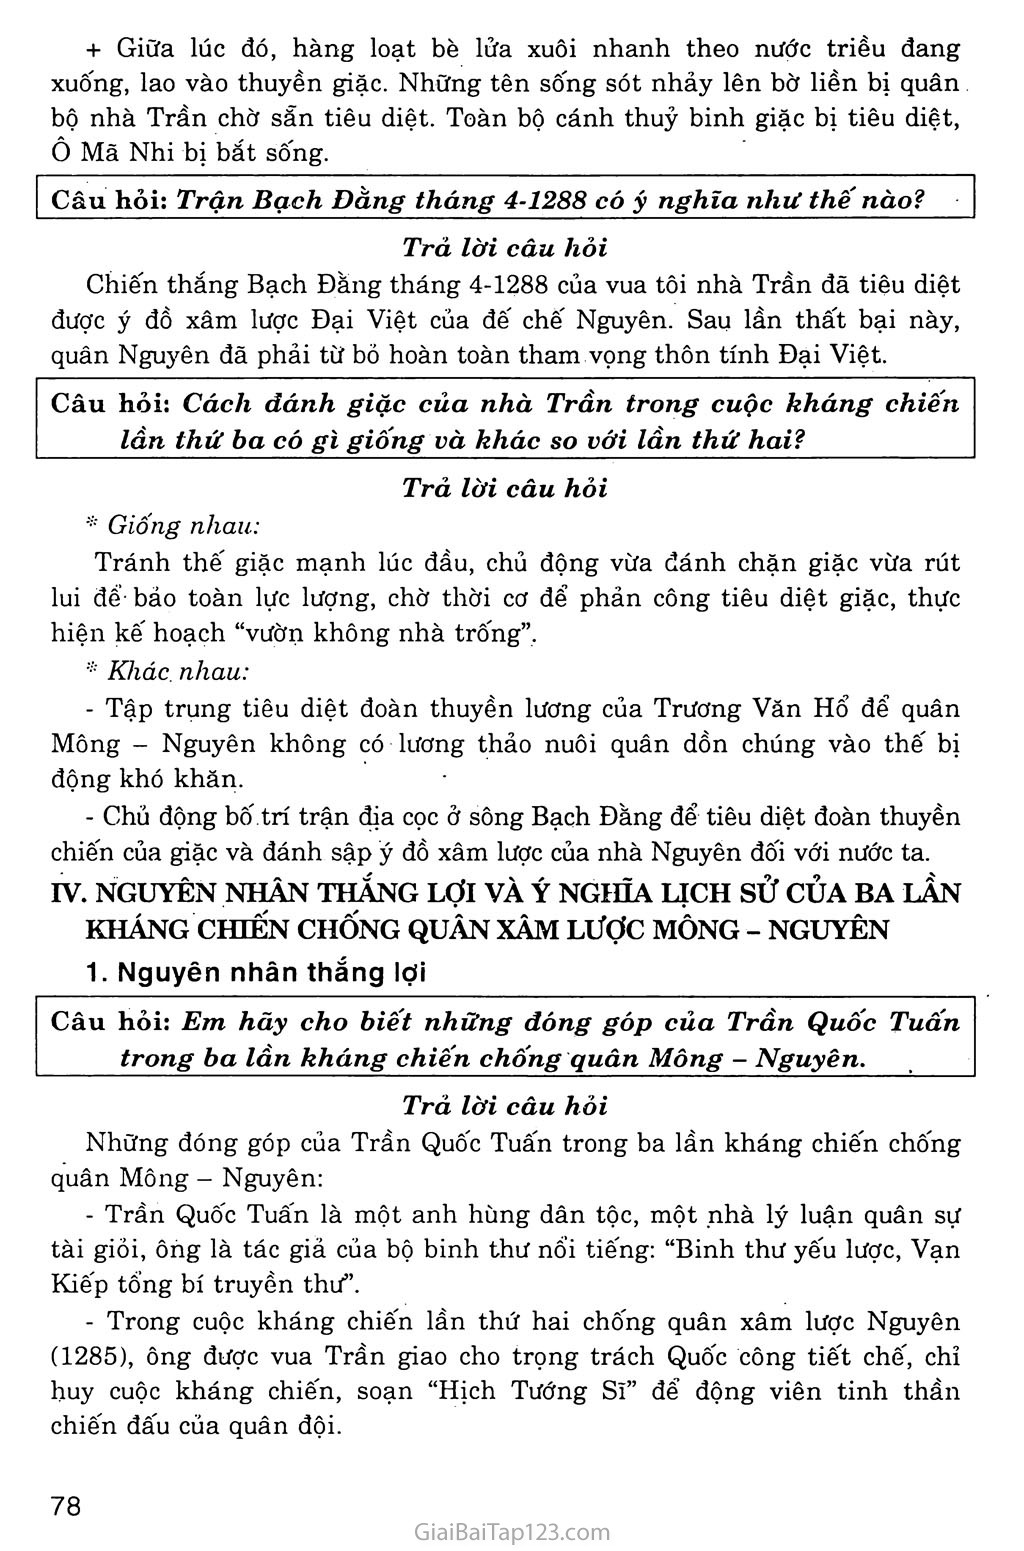 Bài 14: Ba lần kháng chiến chống quân xâm lược Mông - Nguyên (thế kỉ XIII) trang 11